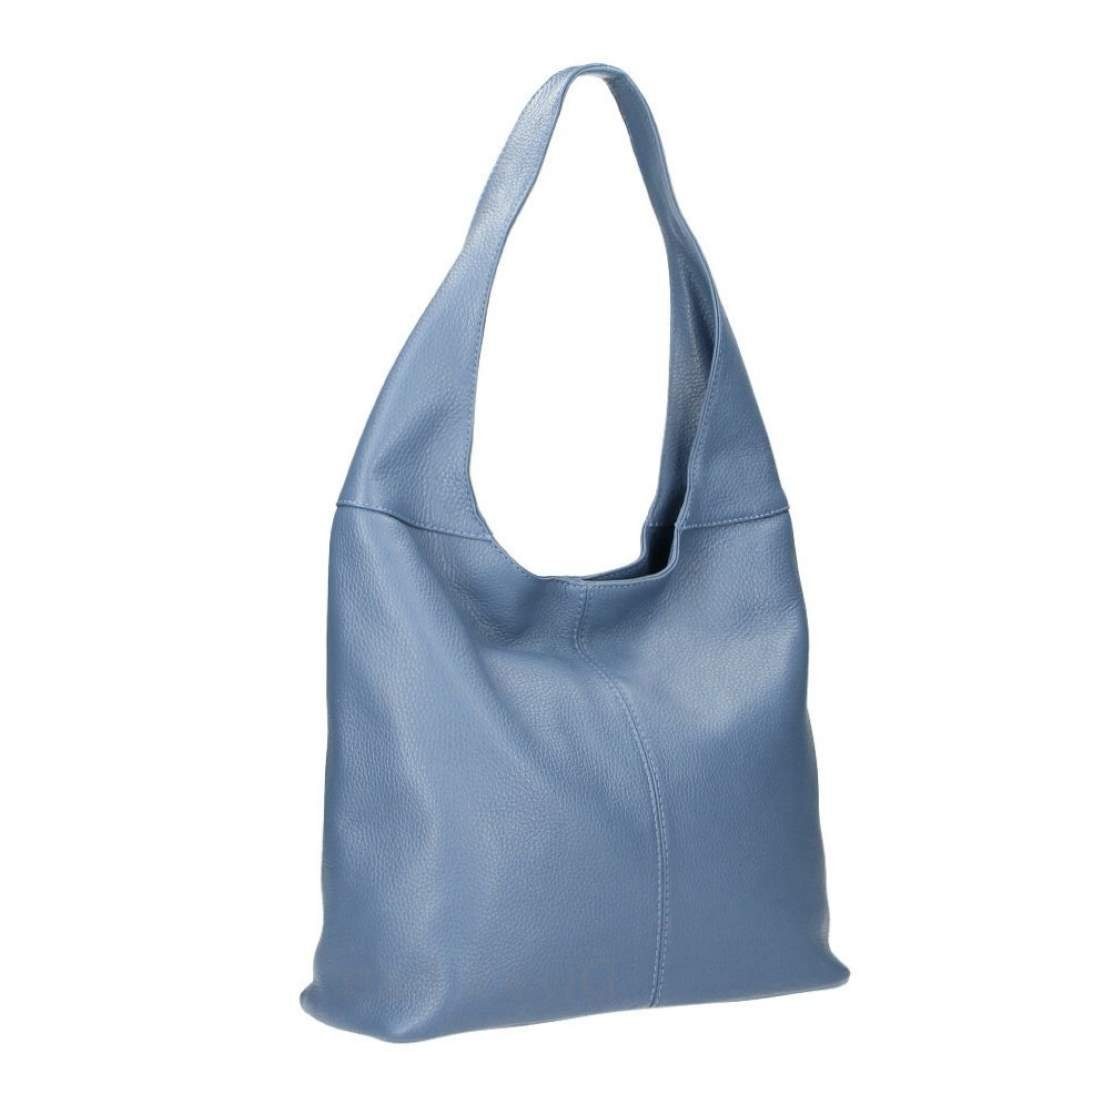 ITALYSHOP24 Shopper Made in Italy Damen Leder Tasche Schultertasche, ein Leichtgewicht, als Handtasche, Umhängetasche tragbar